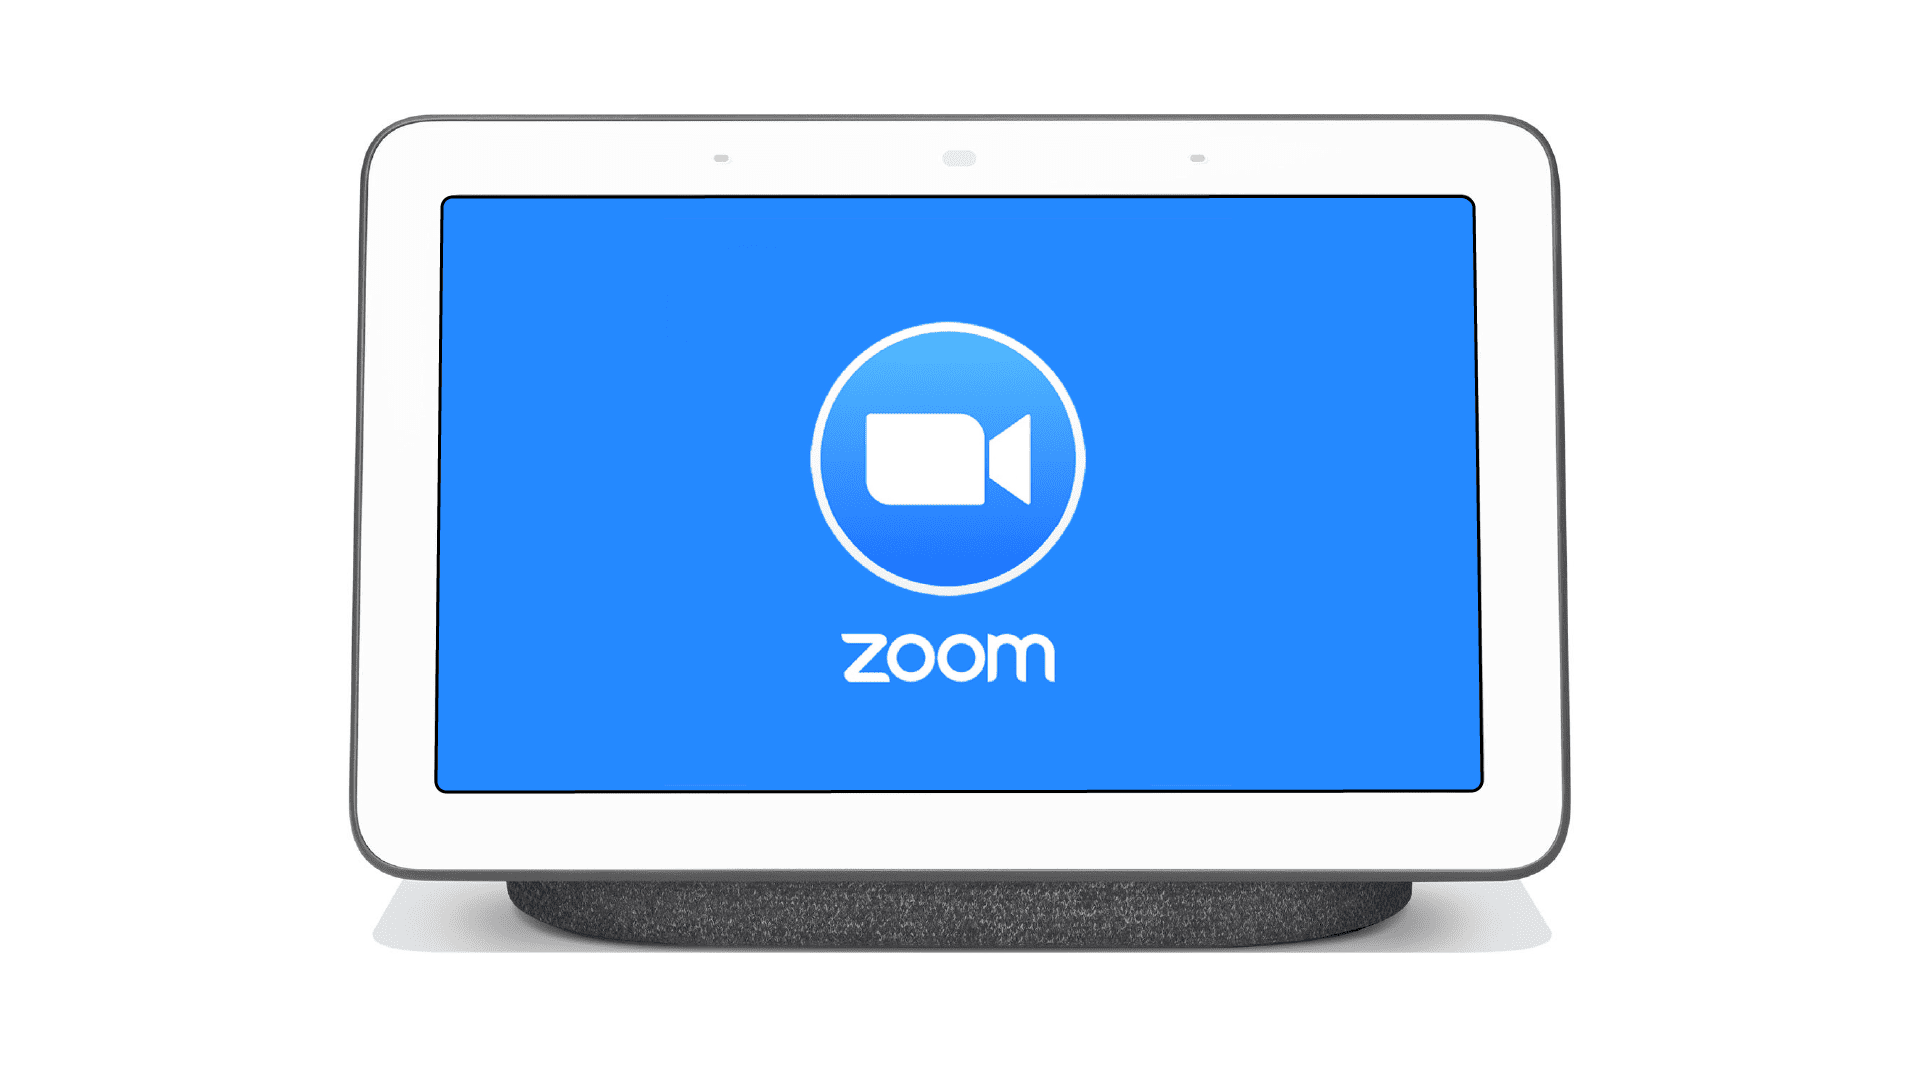 Zoom kommt zu Smart Displays von Amazon, Facebook, und Google später in diesem Jahr 60